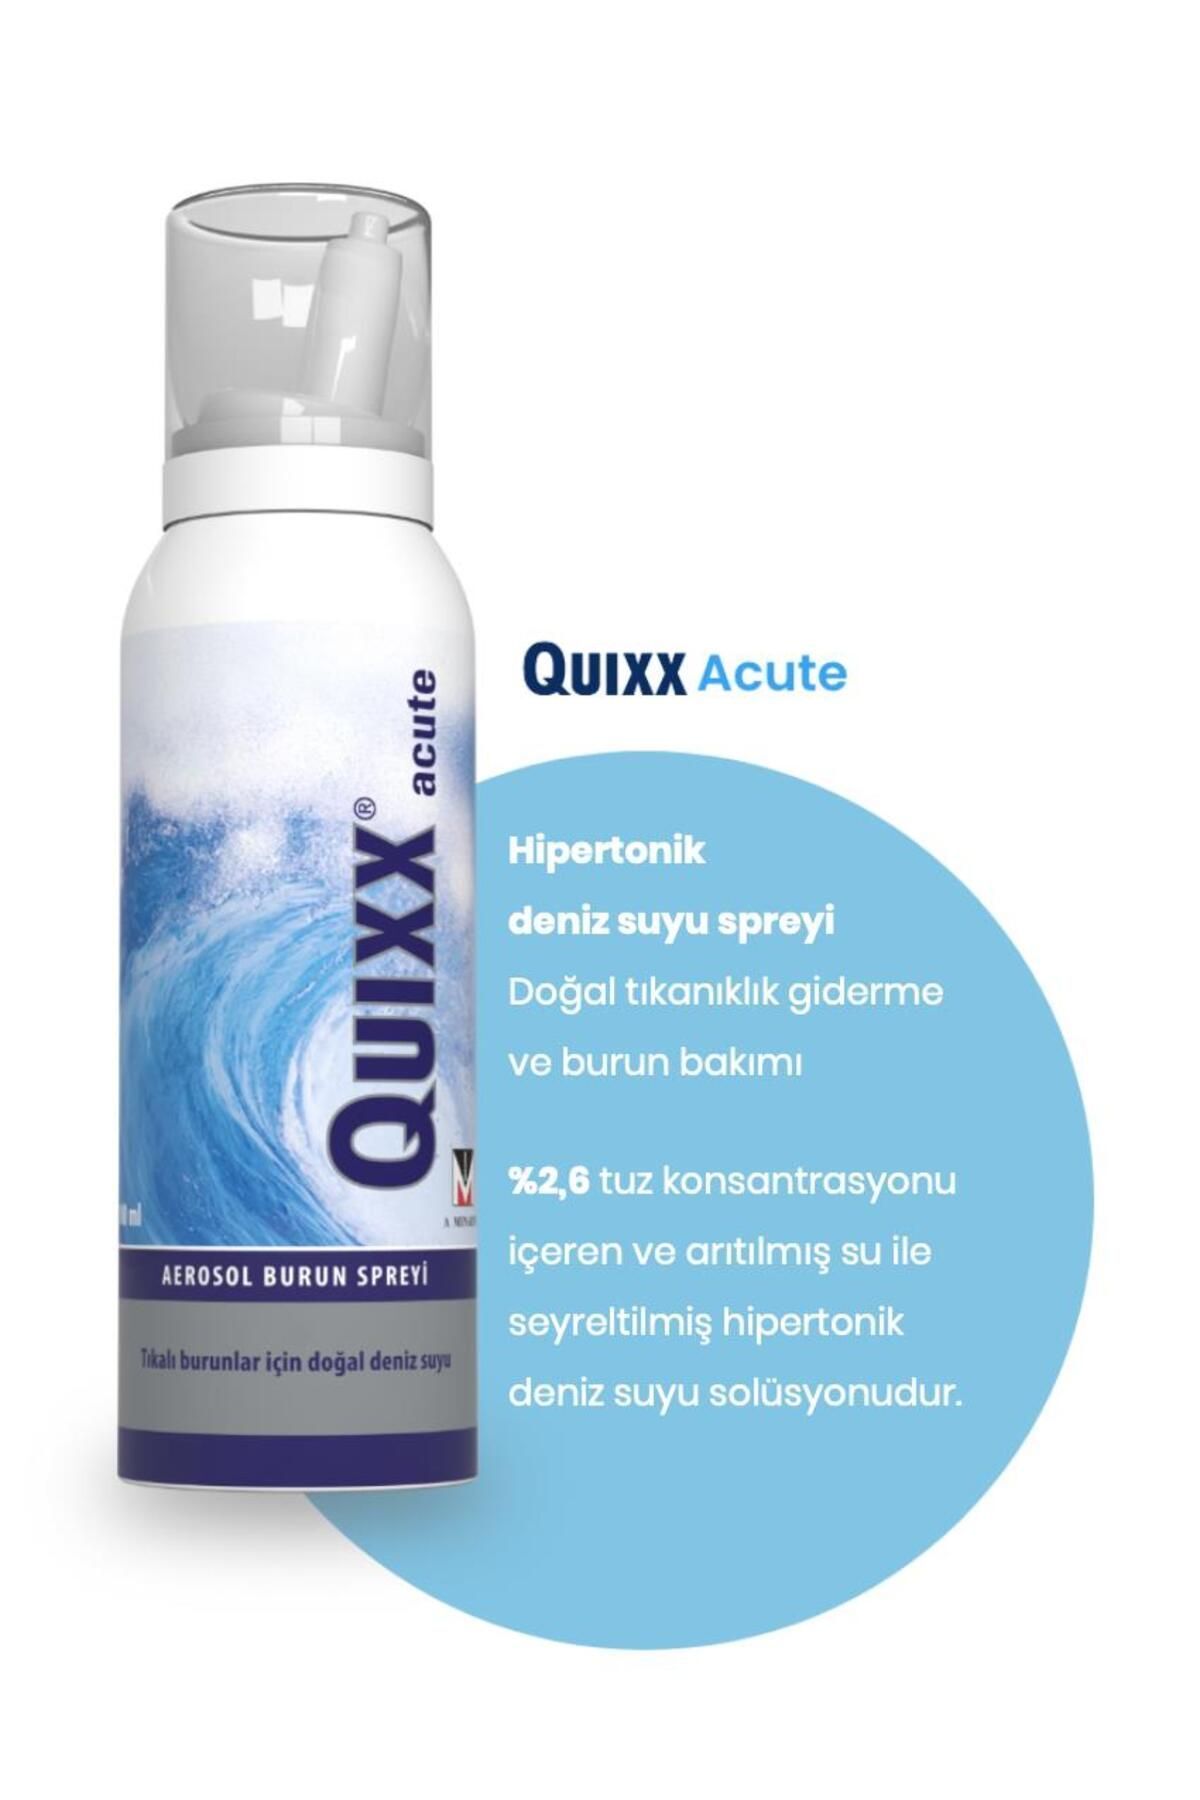 QUIXX Acute Aerosol Burun Spreyi 100 ml 2 Adet